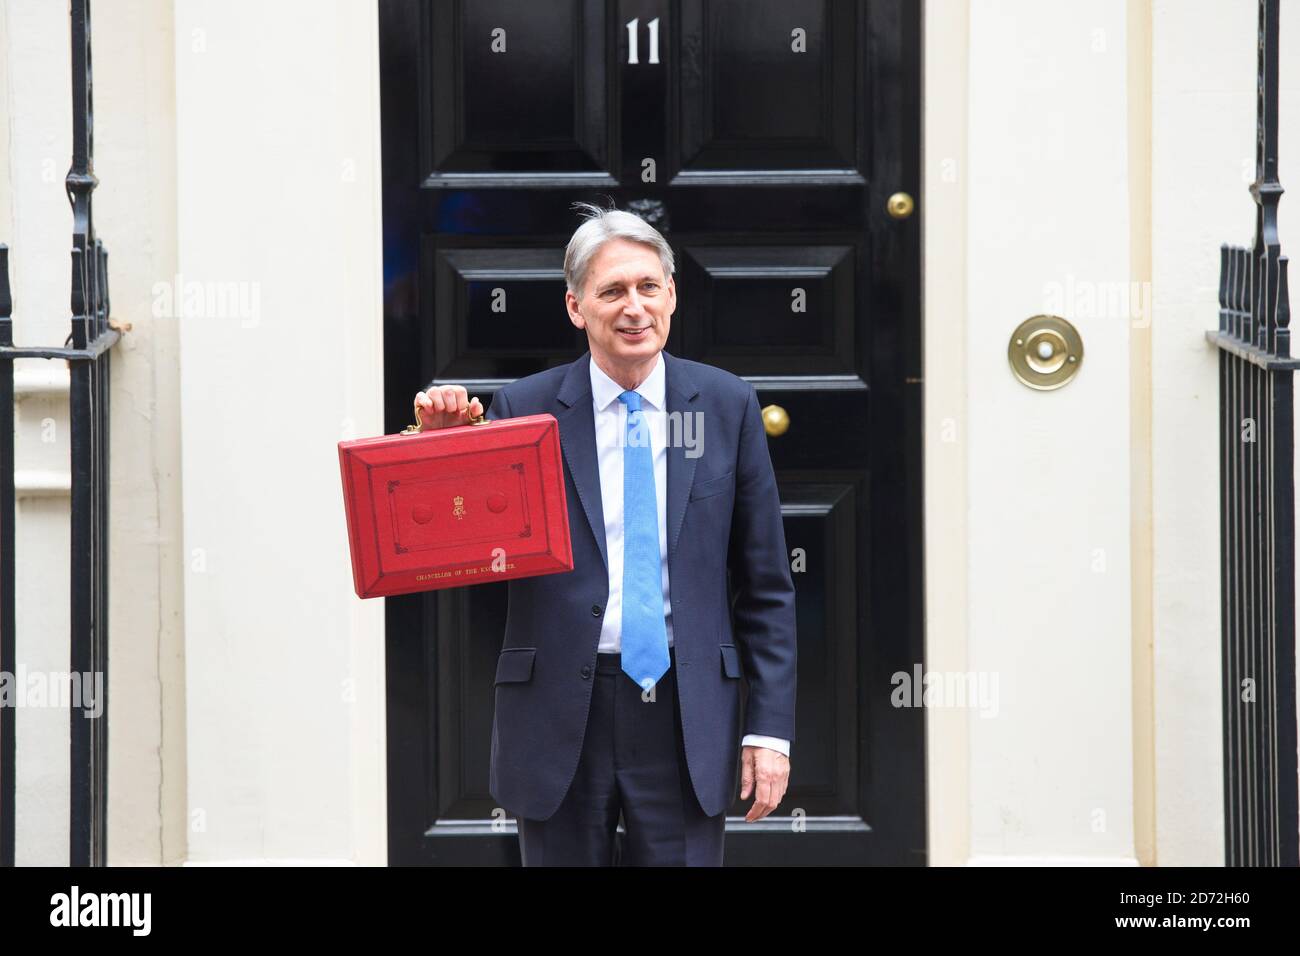 Schatzkanzler Philip Hammond verlässt die Downing Street Nr. 11, bevor er seine Haushaltsrede 2017 hält. Bilddatum: Mittwoch, 22. November 2017. Bildnachweis sollte lauten: Matt Crossick/ EMPICS Entertainment. Stockfoto